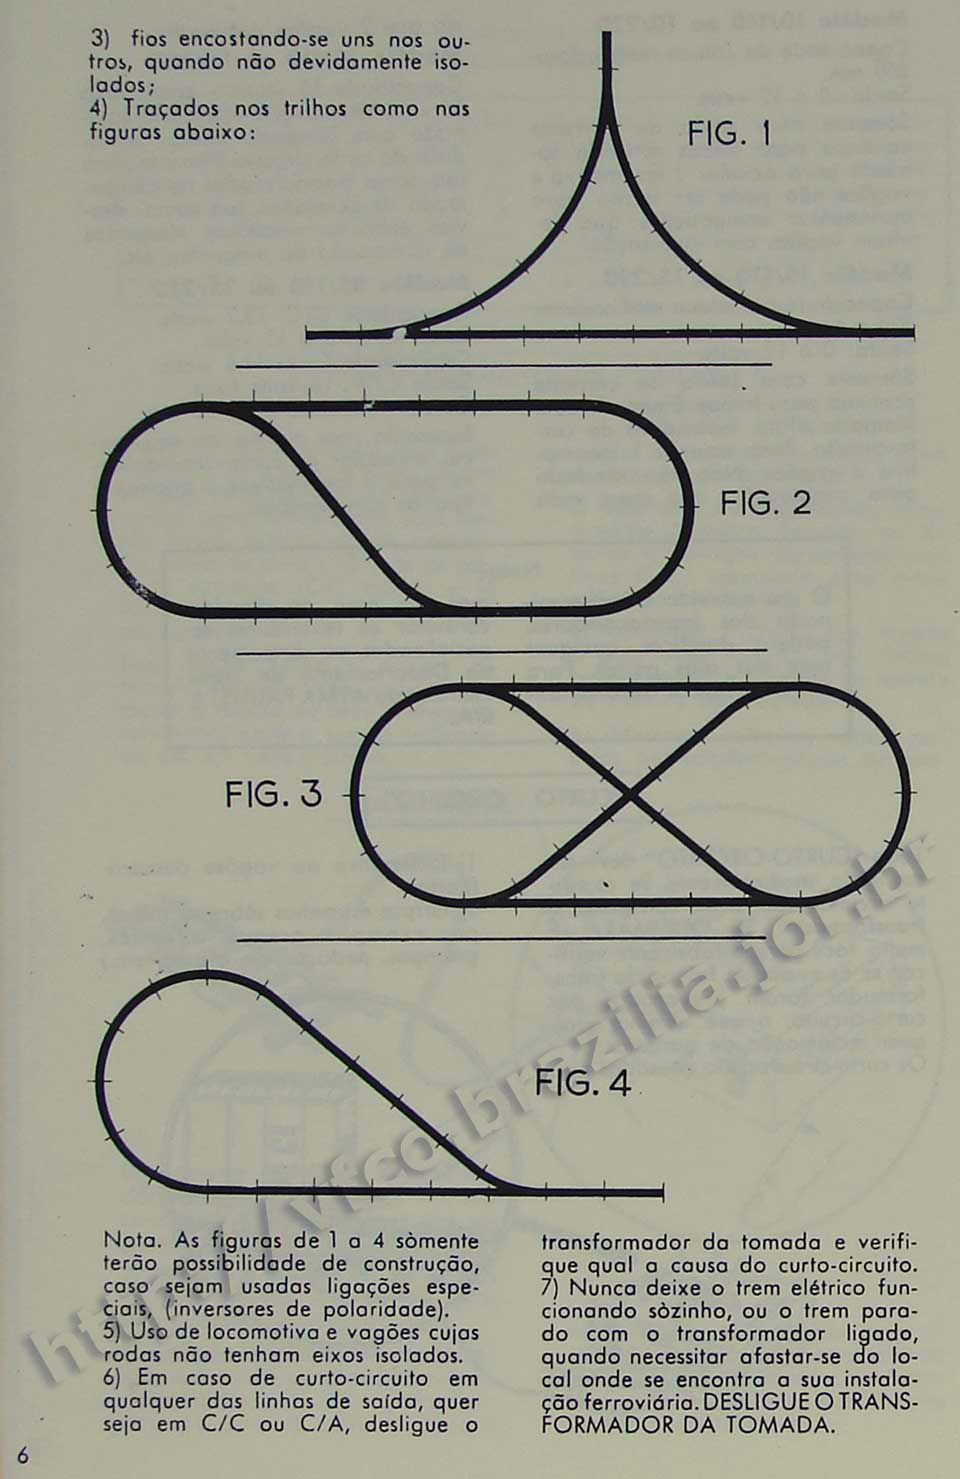 Ligações especiais dos trilhos em triângulo, loop (laço), cruzamento, na Página 6 do manual "Como montar e operar seu trem elétrico Atma" para maquete de ferreomodelismo